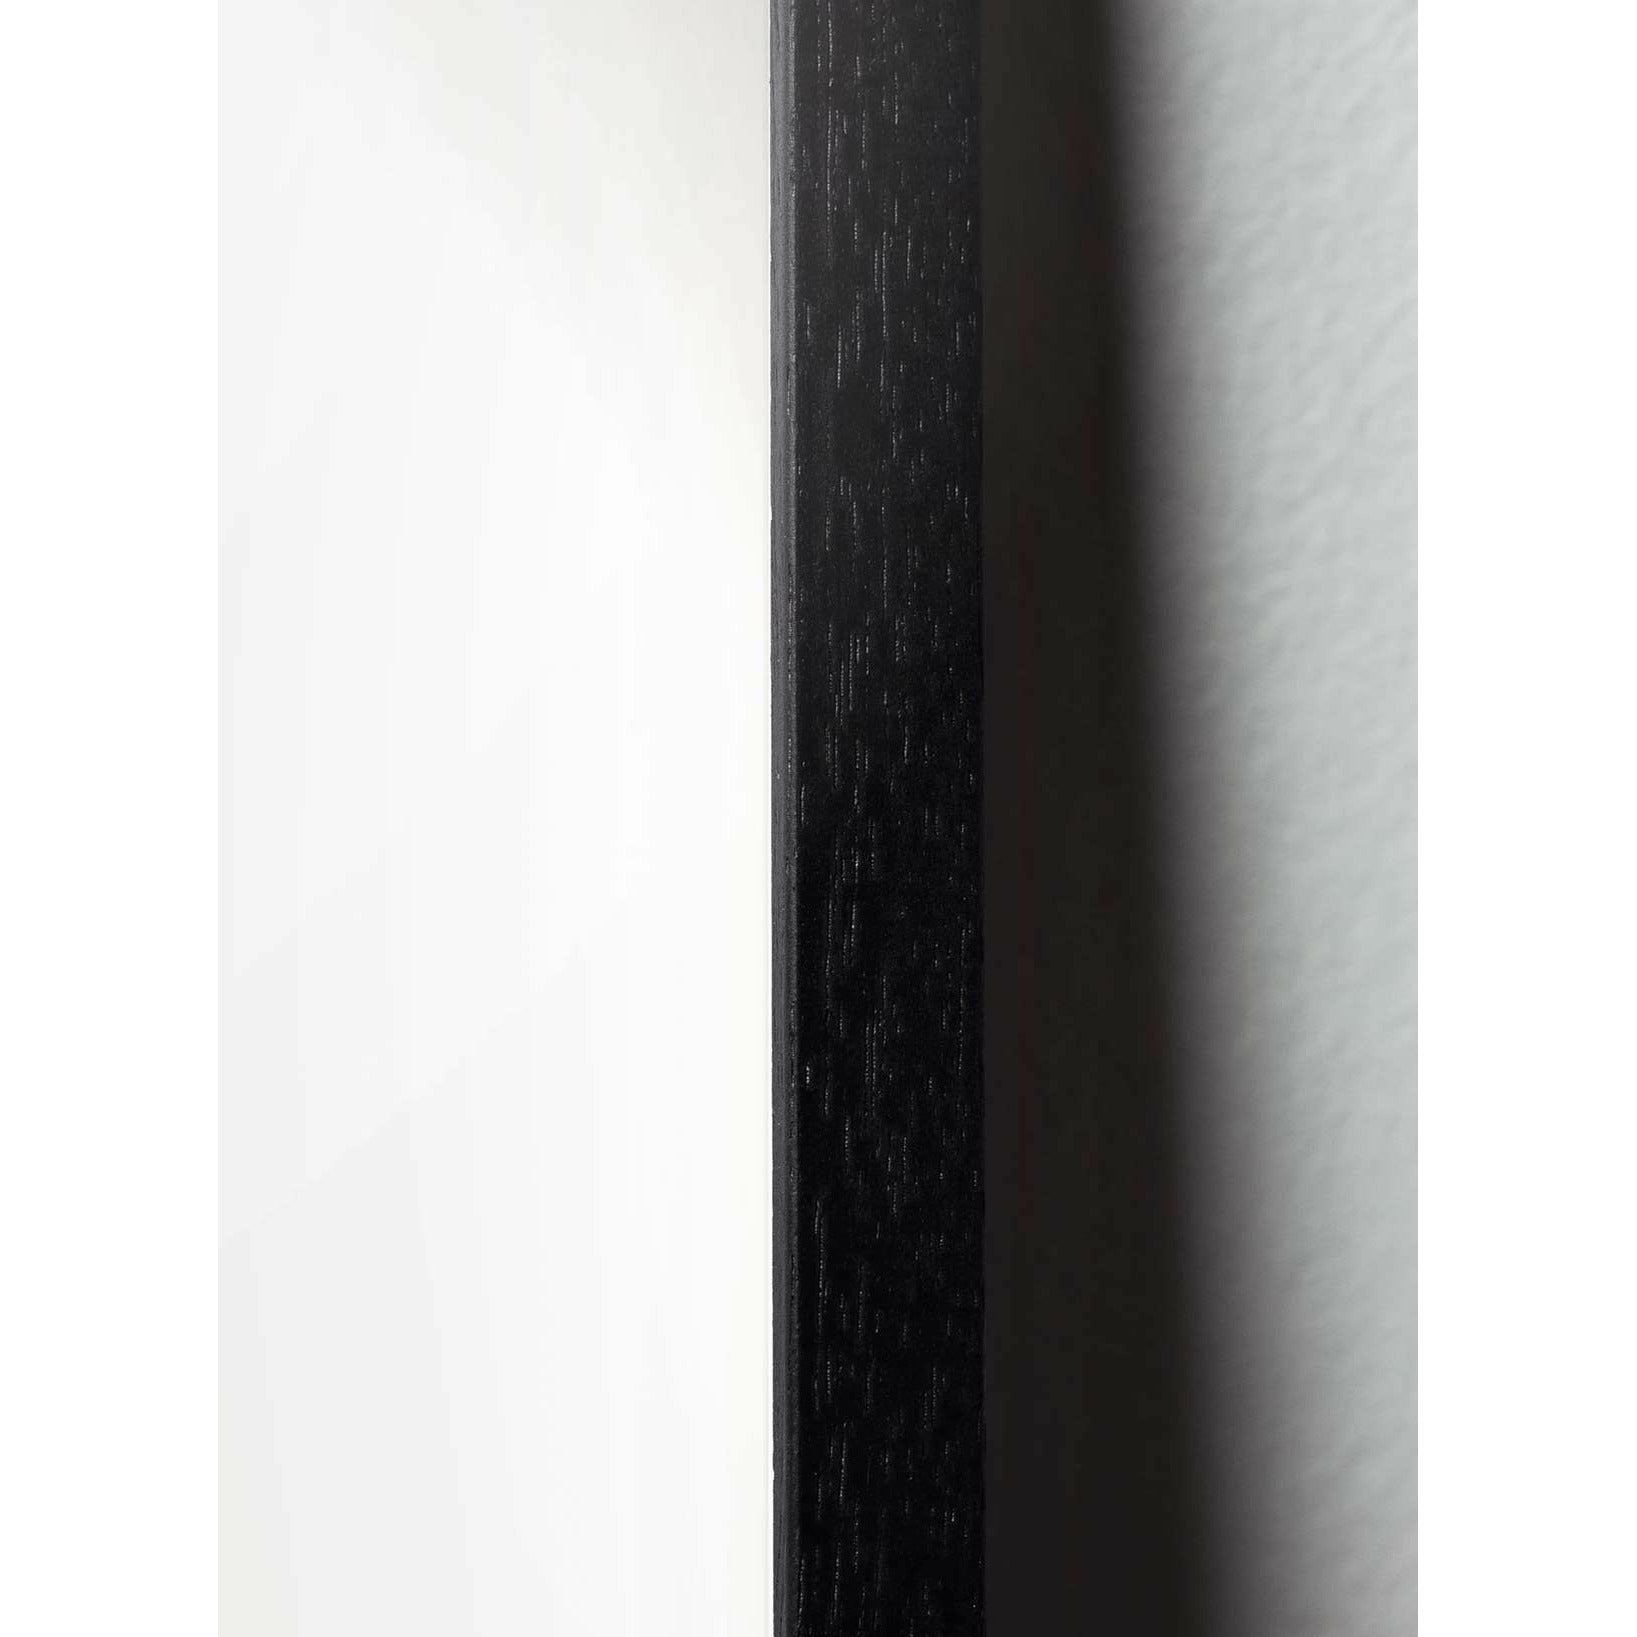 brainchild Eierfiguren Poster, Rahmen aus schwarz lackiertem Holz 70 x100 cm, braun